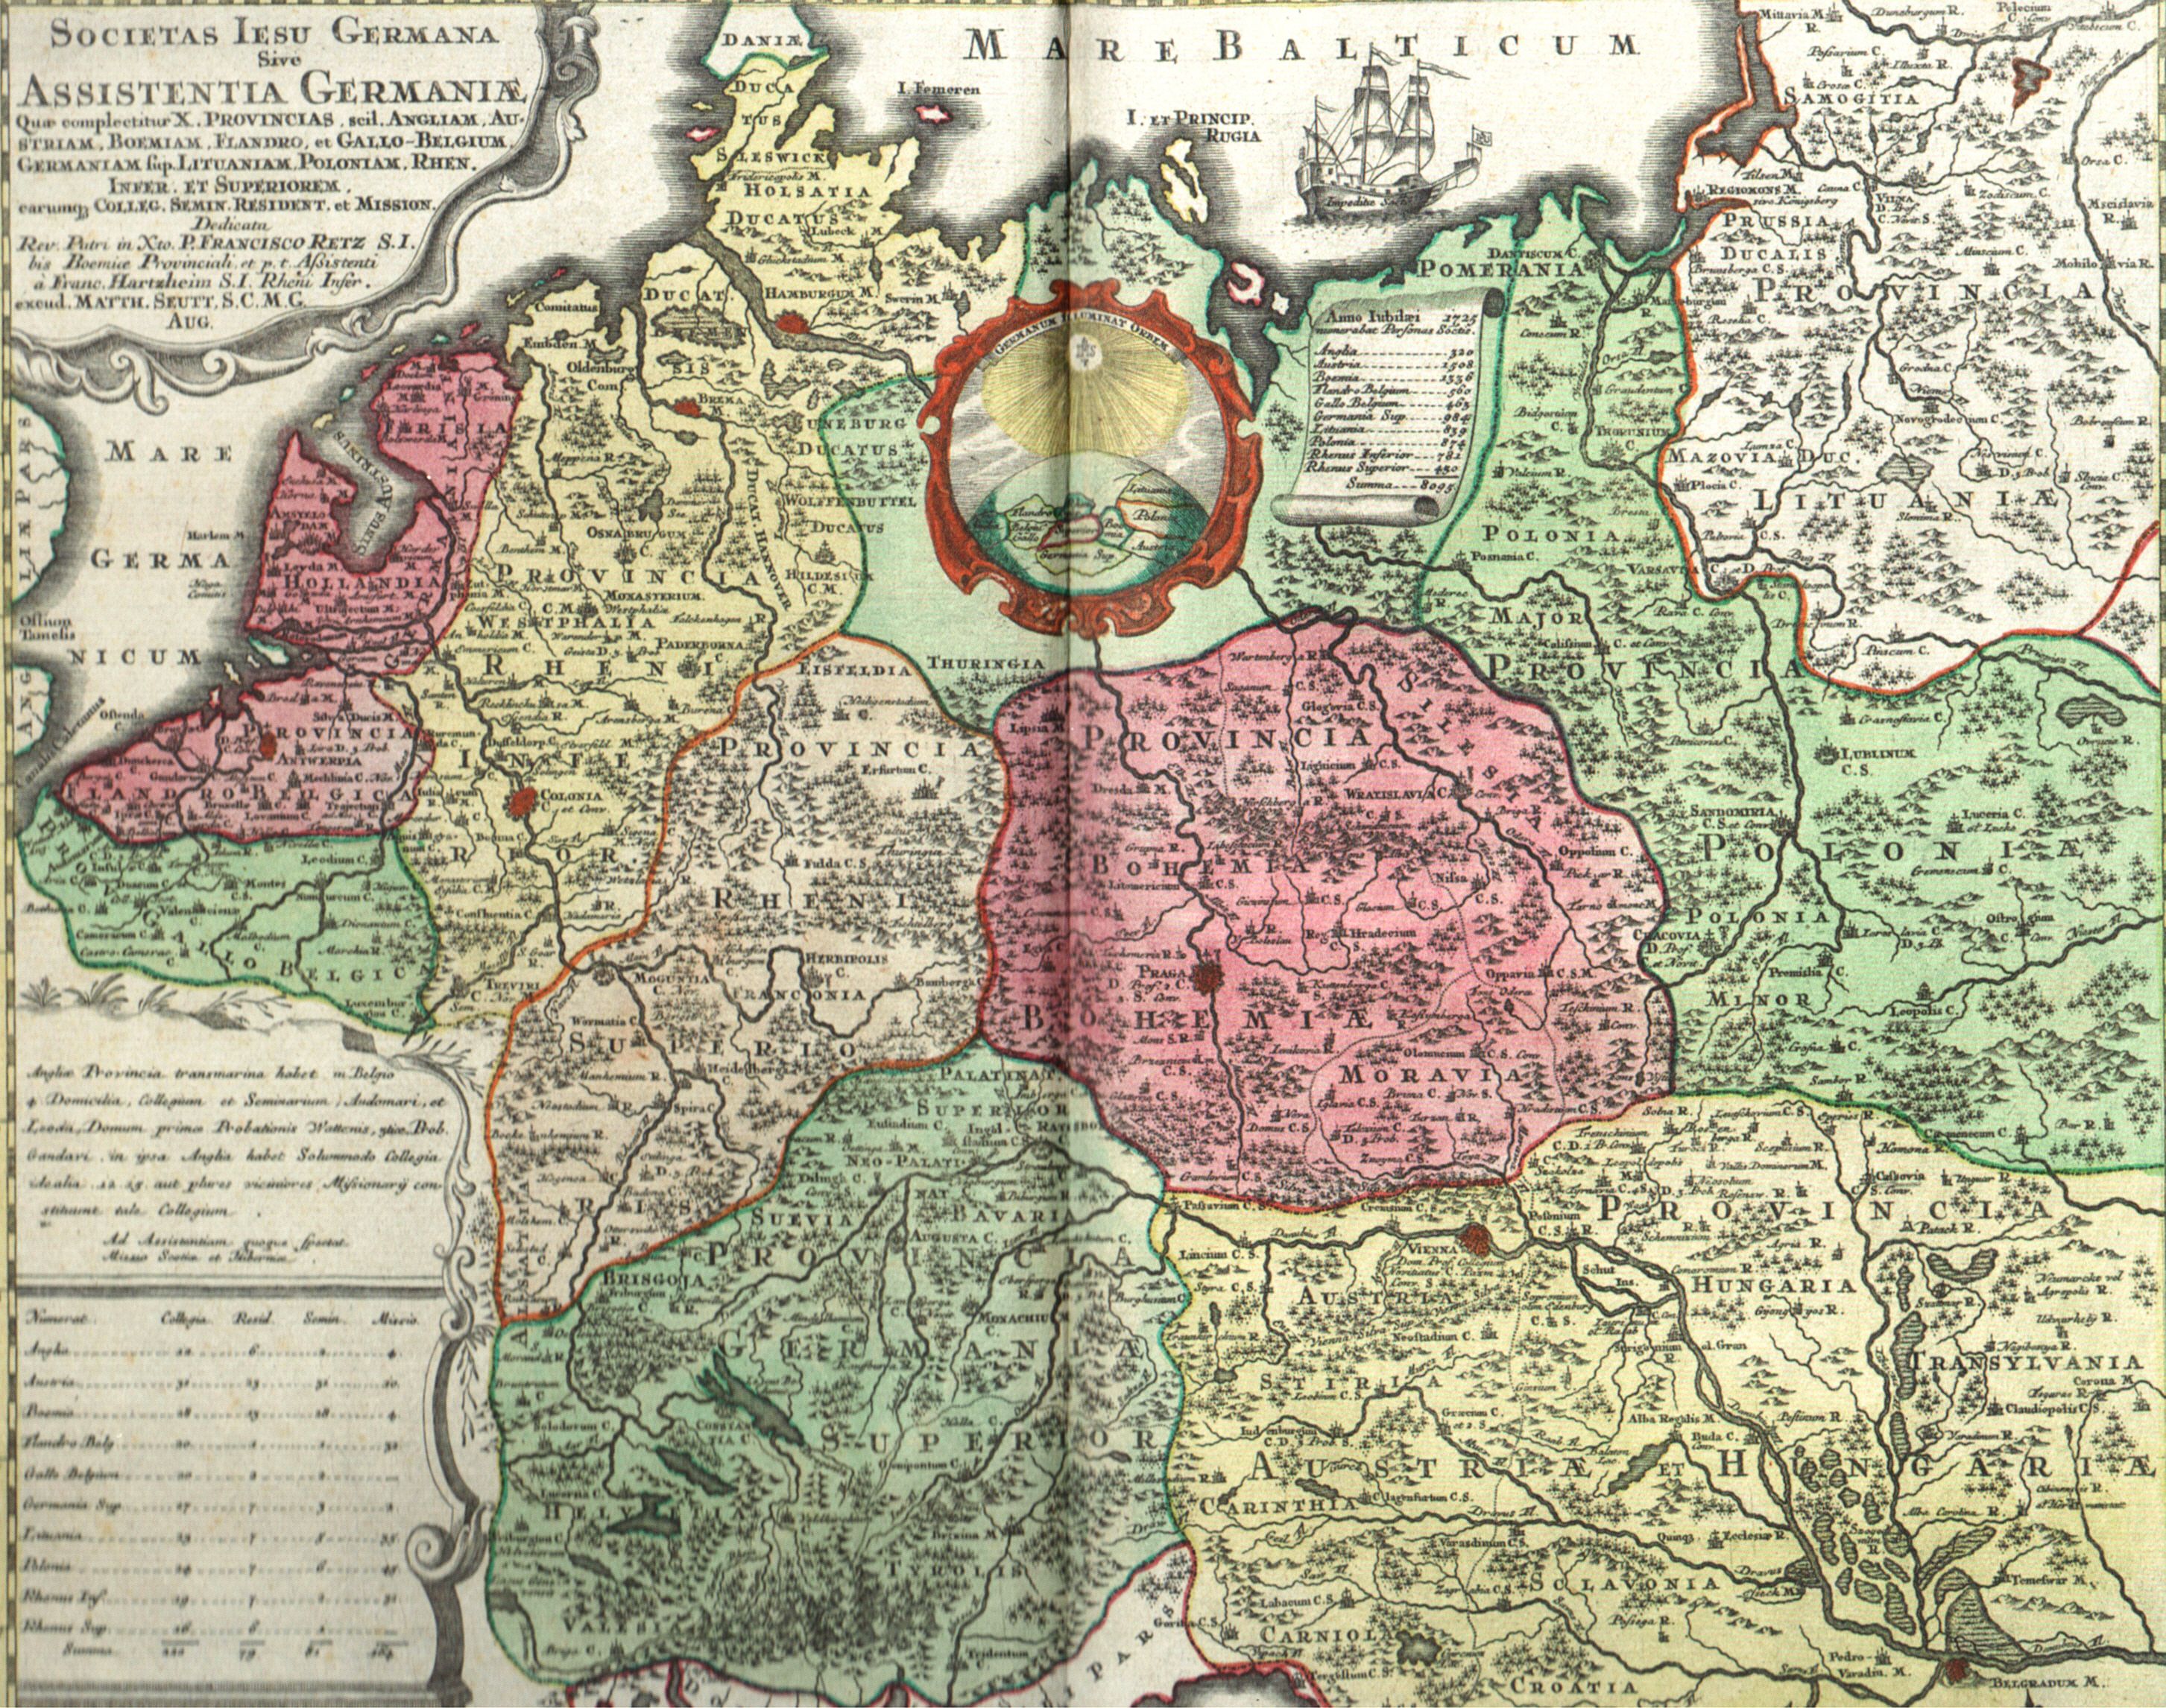 A német asszisztencia rendtartományainak térképe (1725)